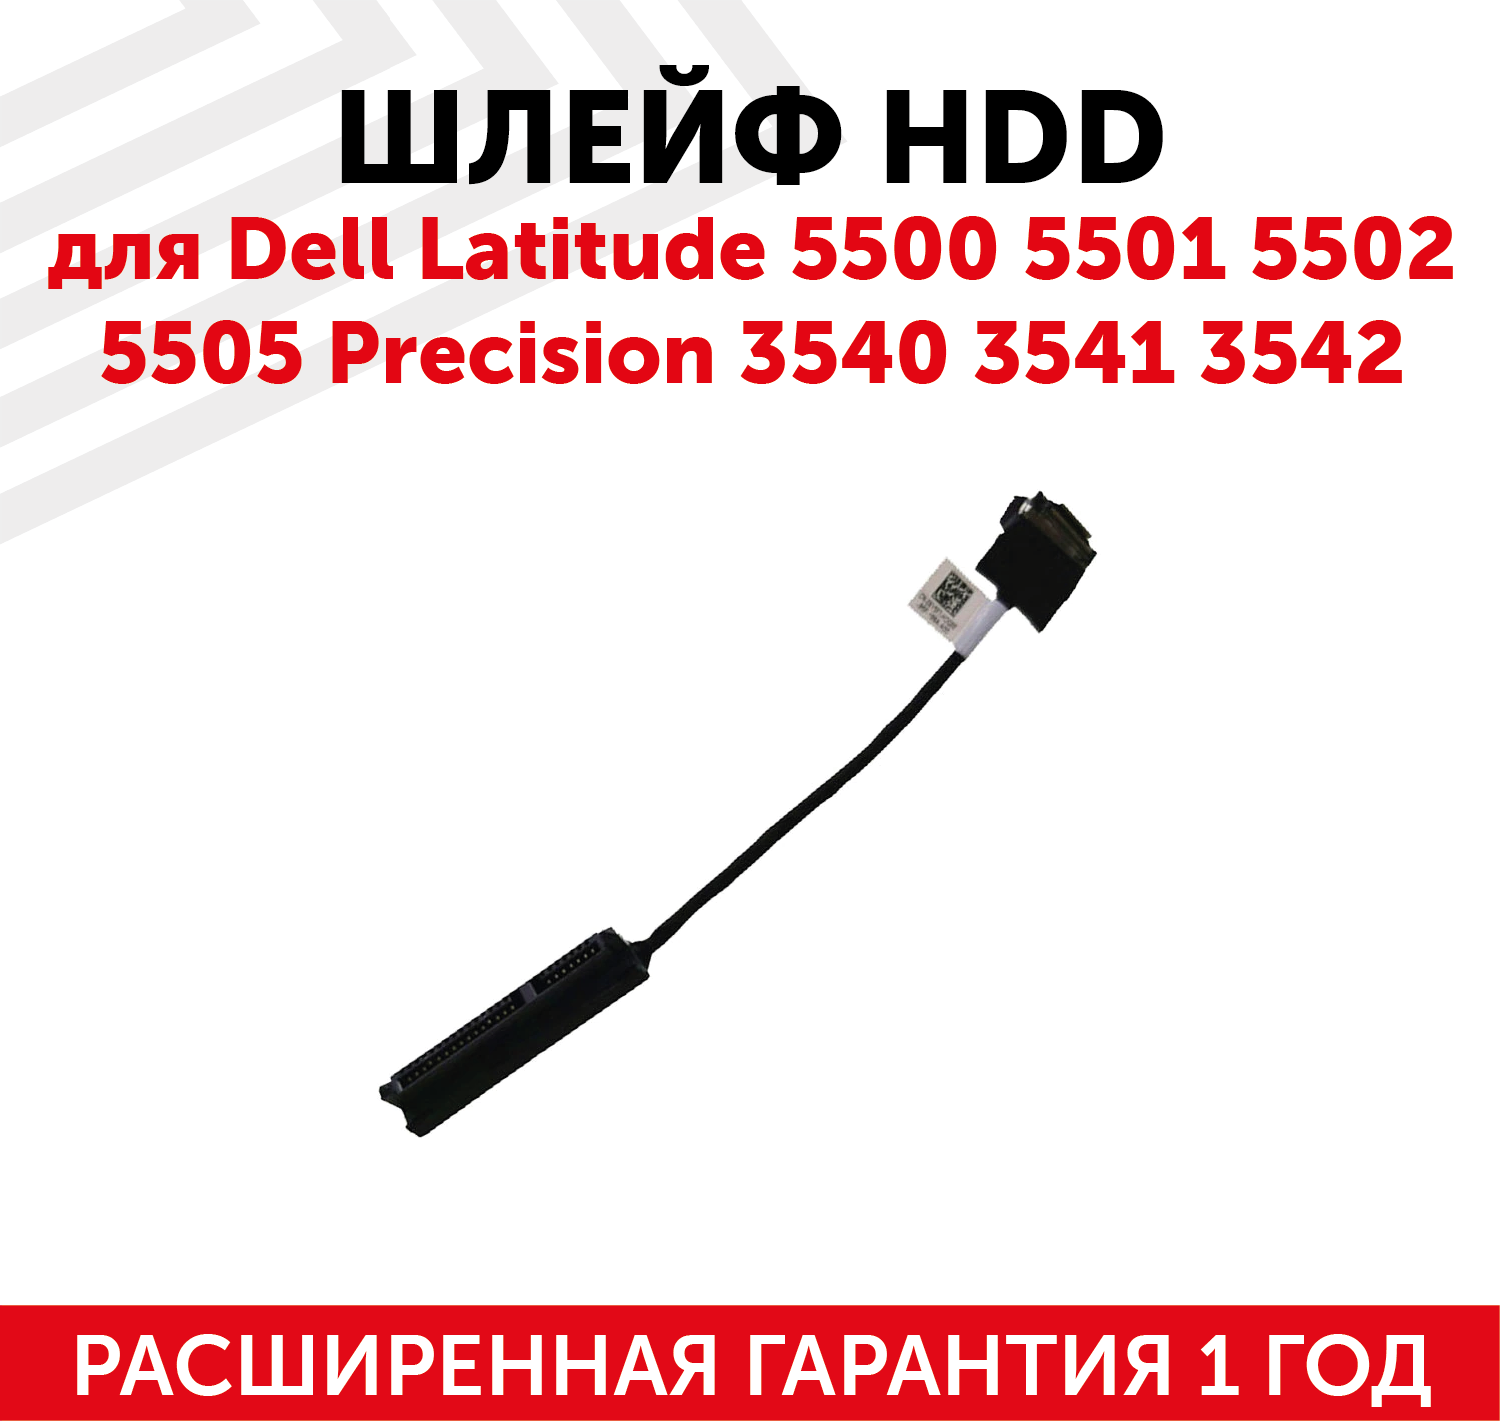 Шлейф жесткого диска для ноутбука Dell Latitude 5500, 5501, 5502, 5505, Precision 3540, 3541, 3542